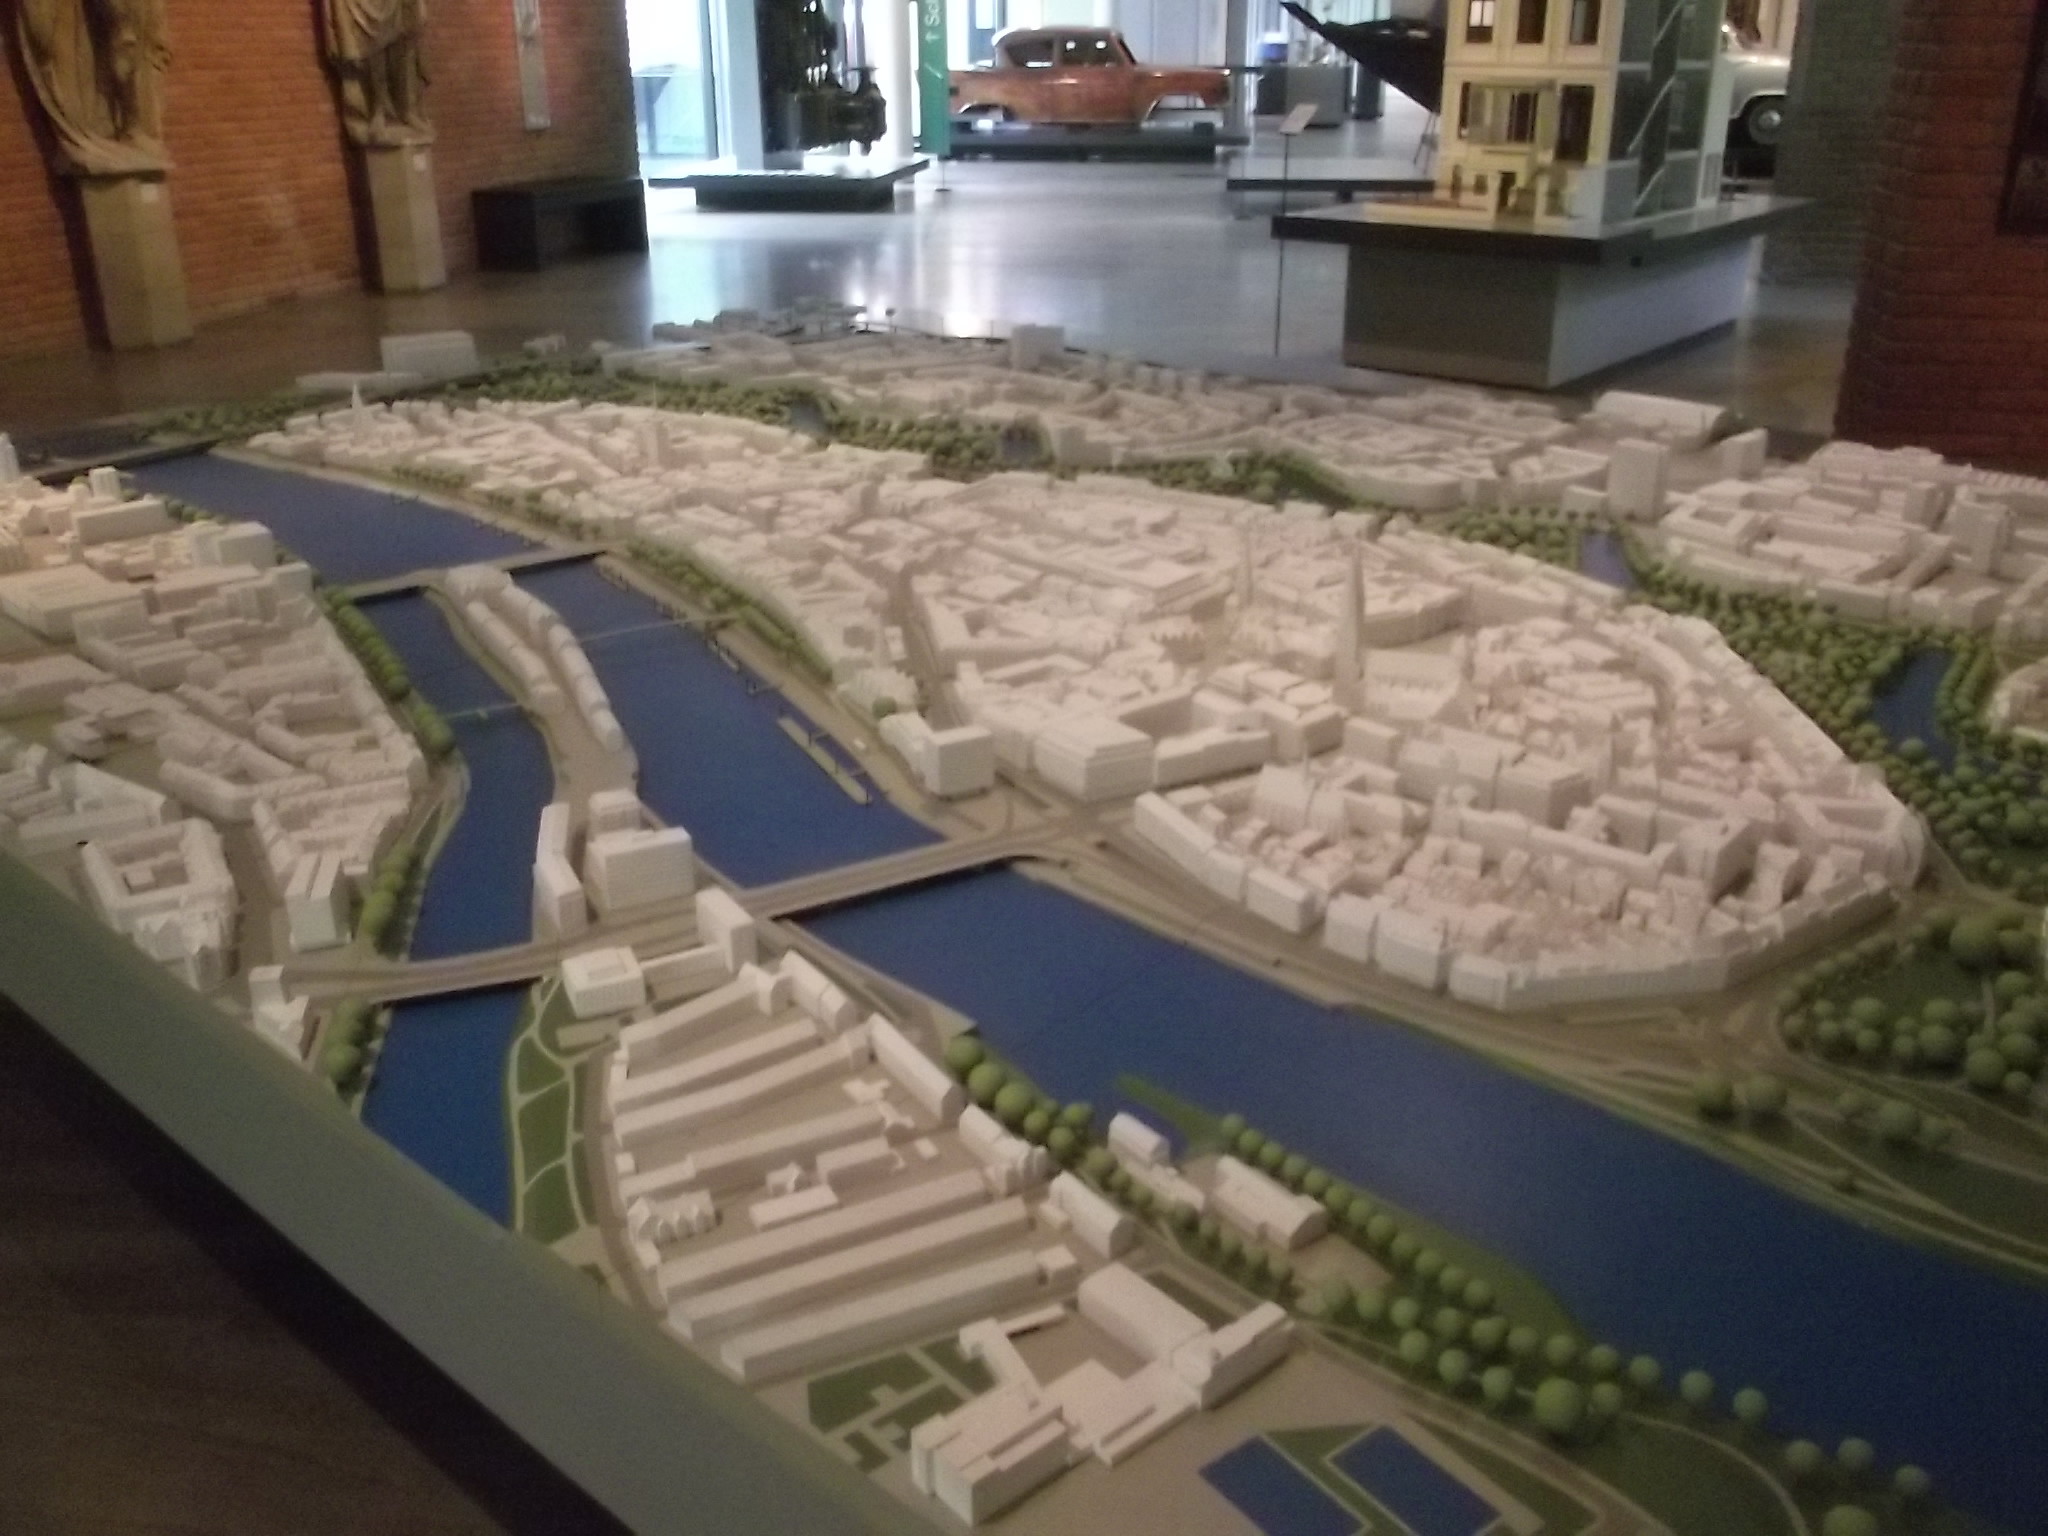 Modell der Stadt Bremen